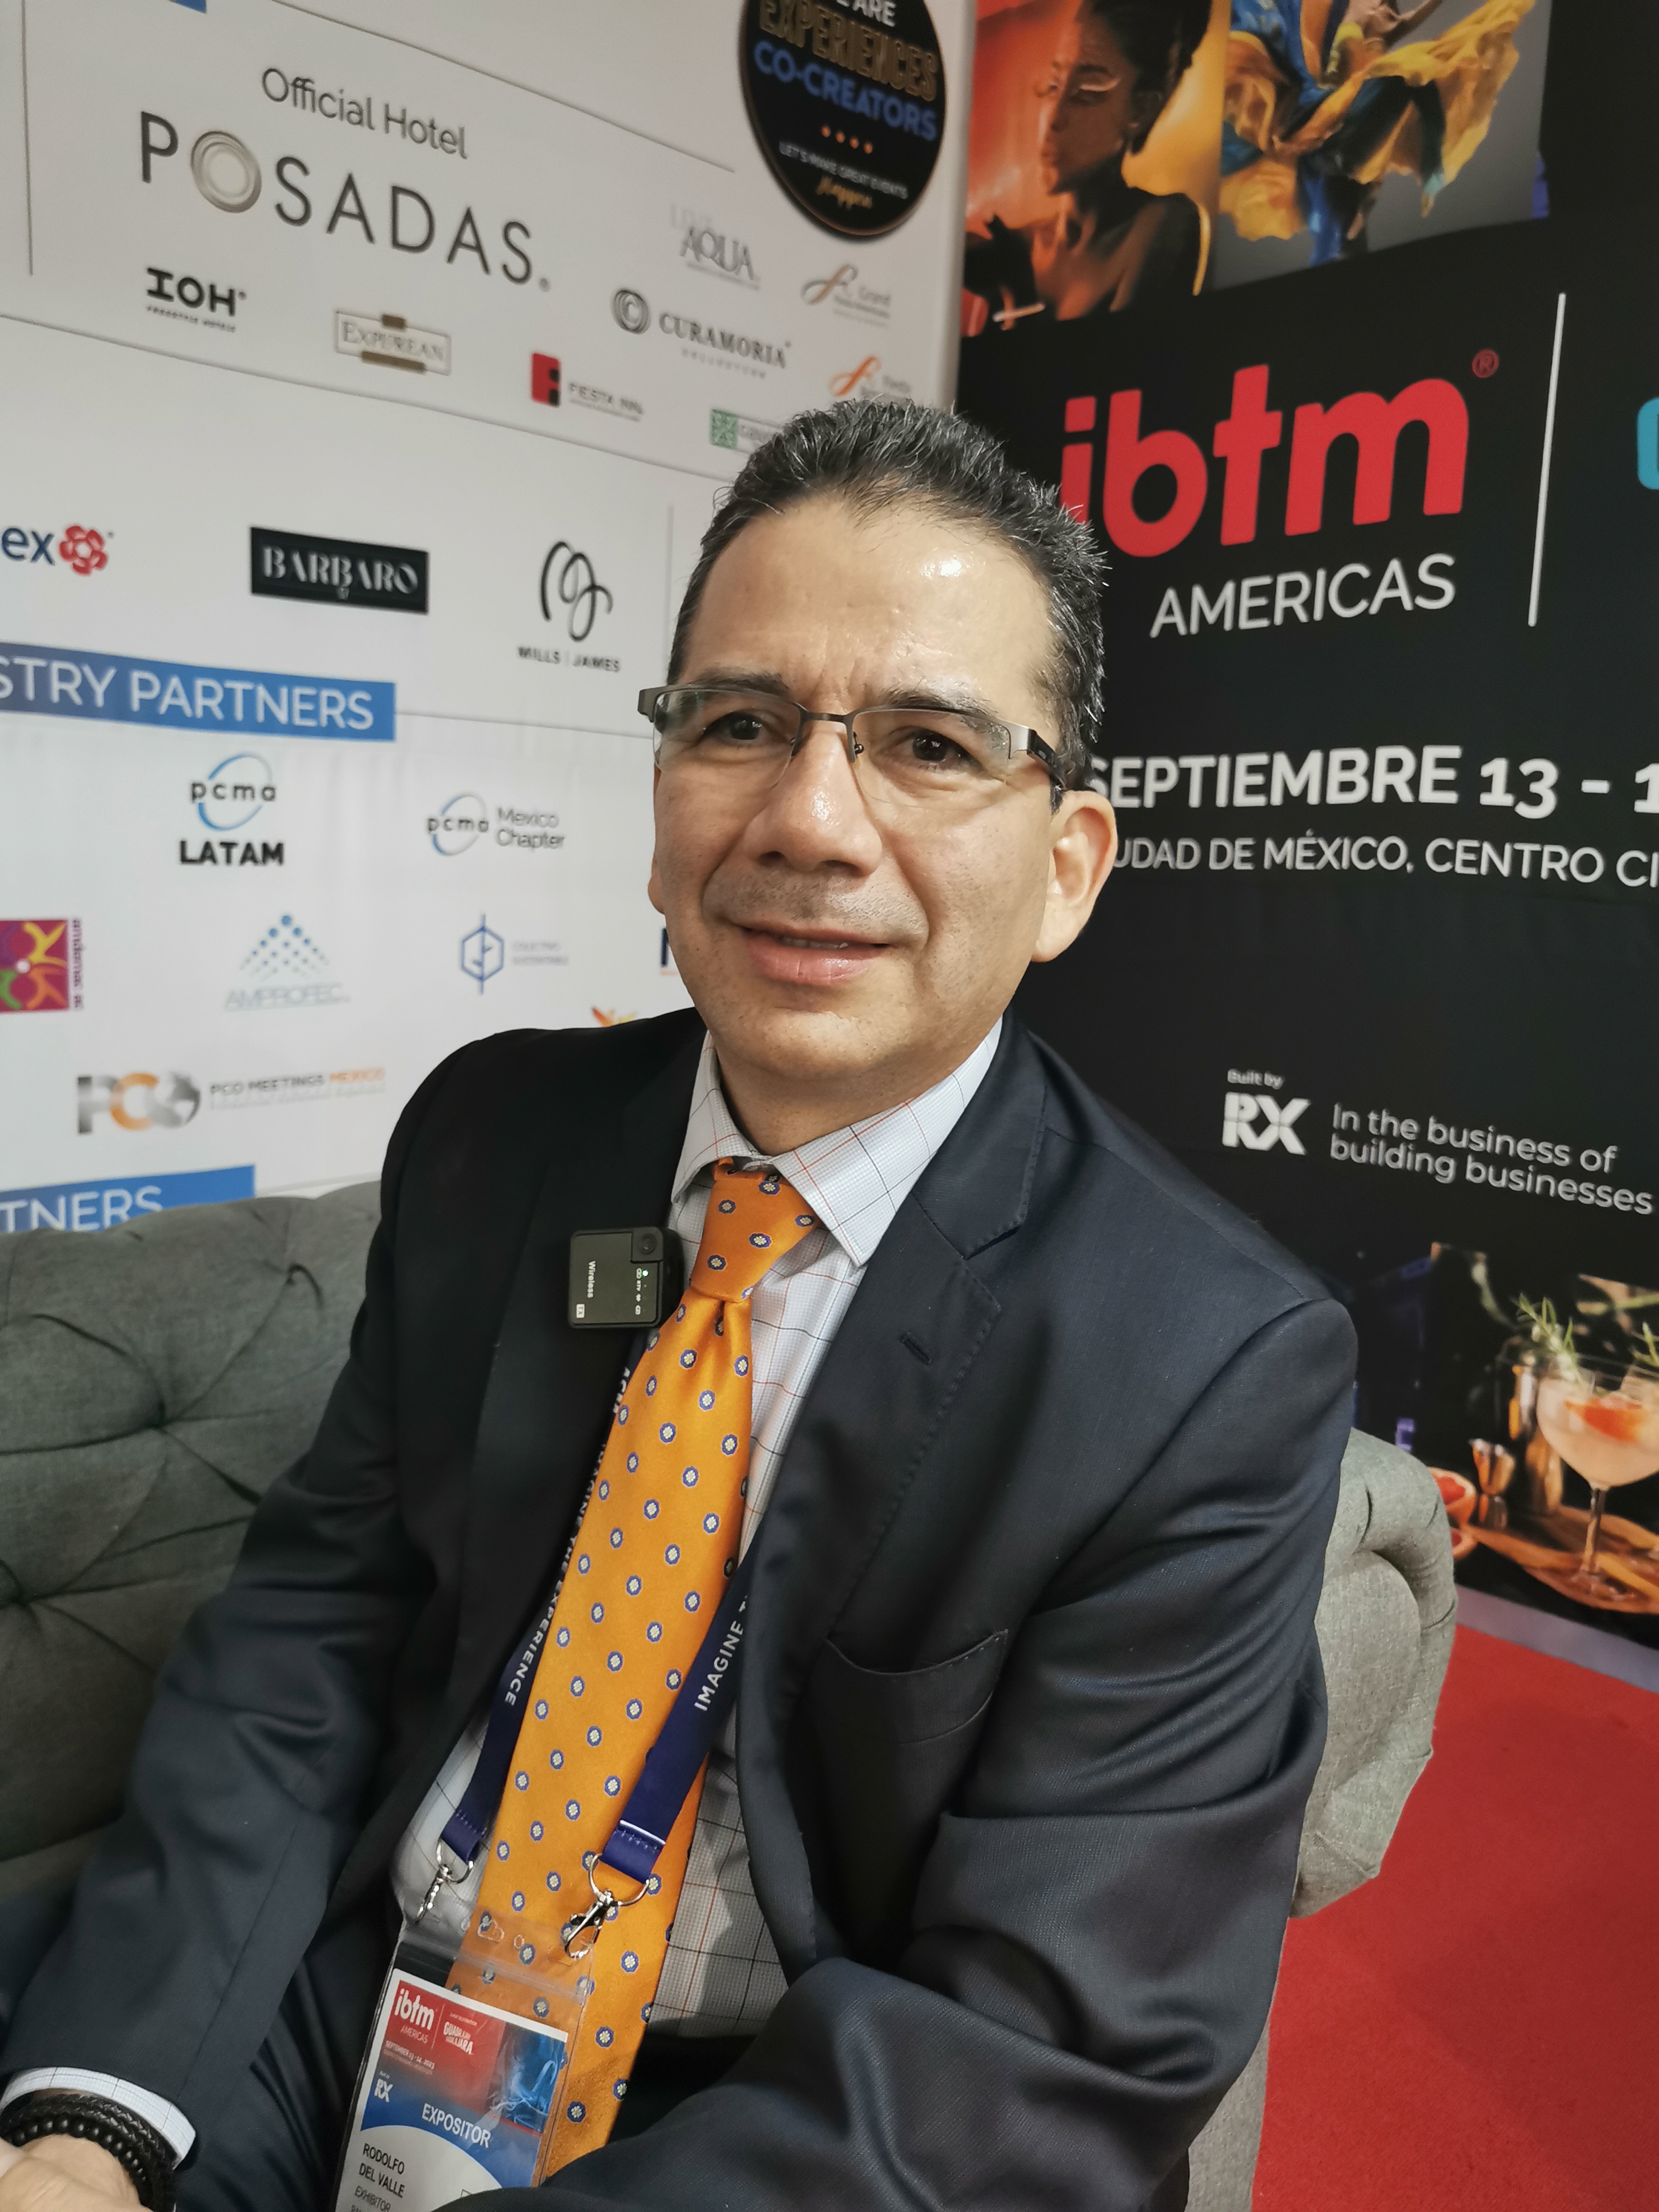 Rodolfo del Valle desde IBTM Americas en Ciudad de México nos comenta sobre el Panama Convention Center